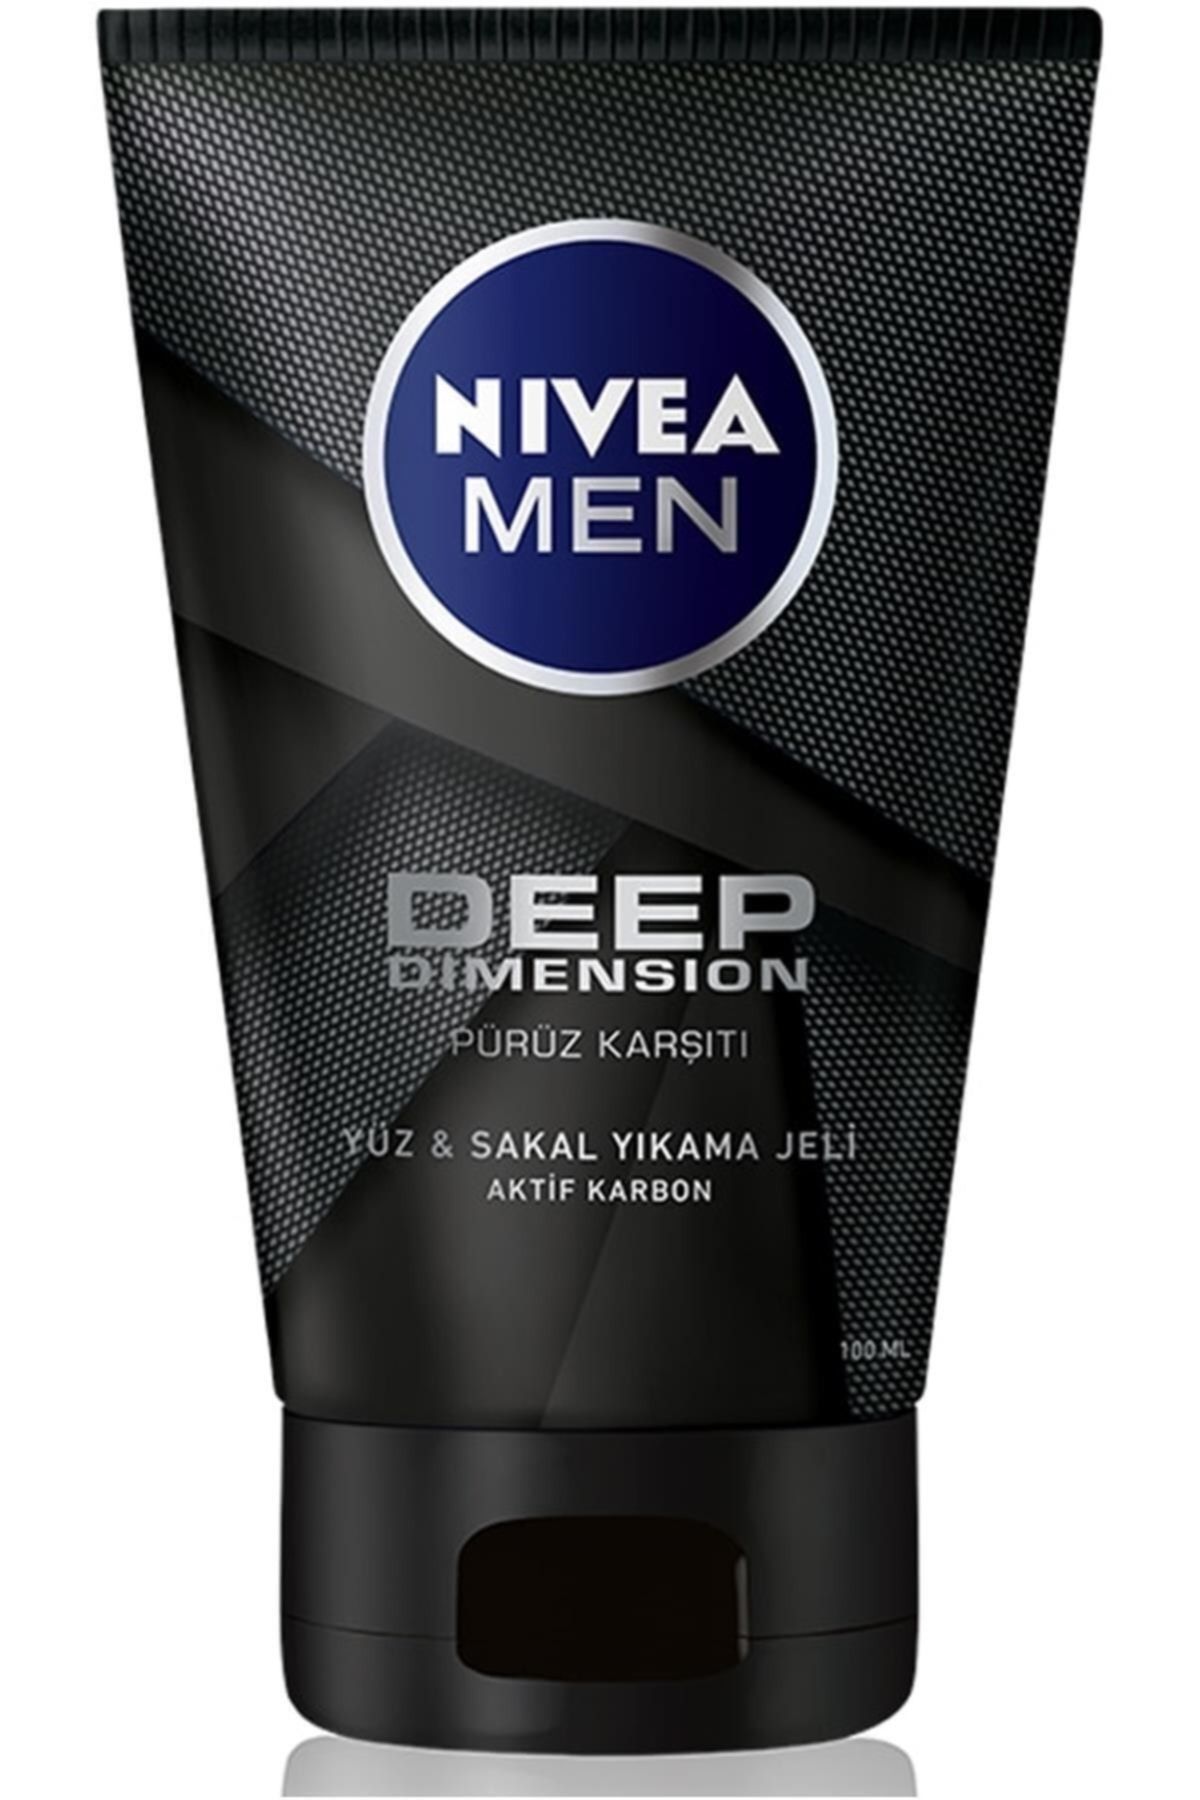 NIVEA Men Deep Dimension Yüz Ve Sakal Temizleme Jeli 100**ml.,